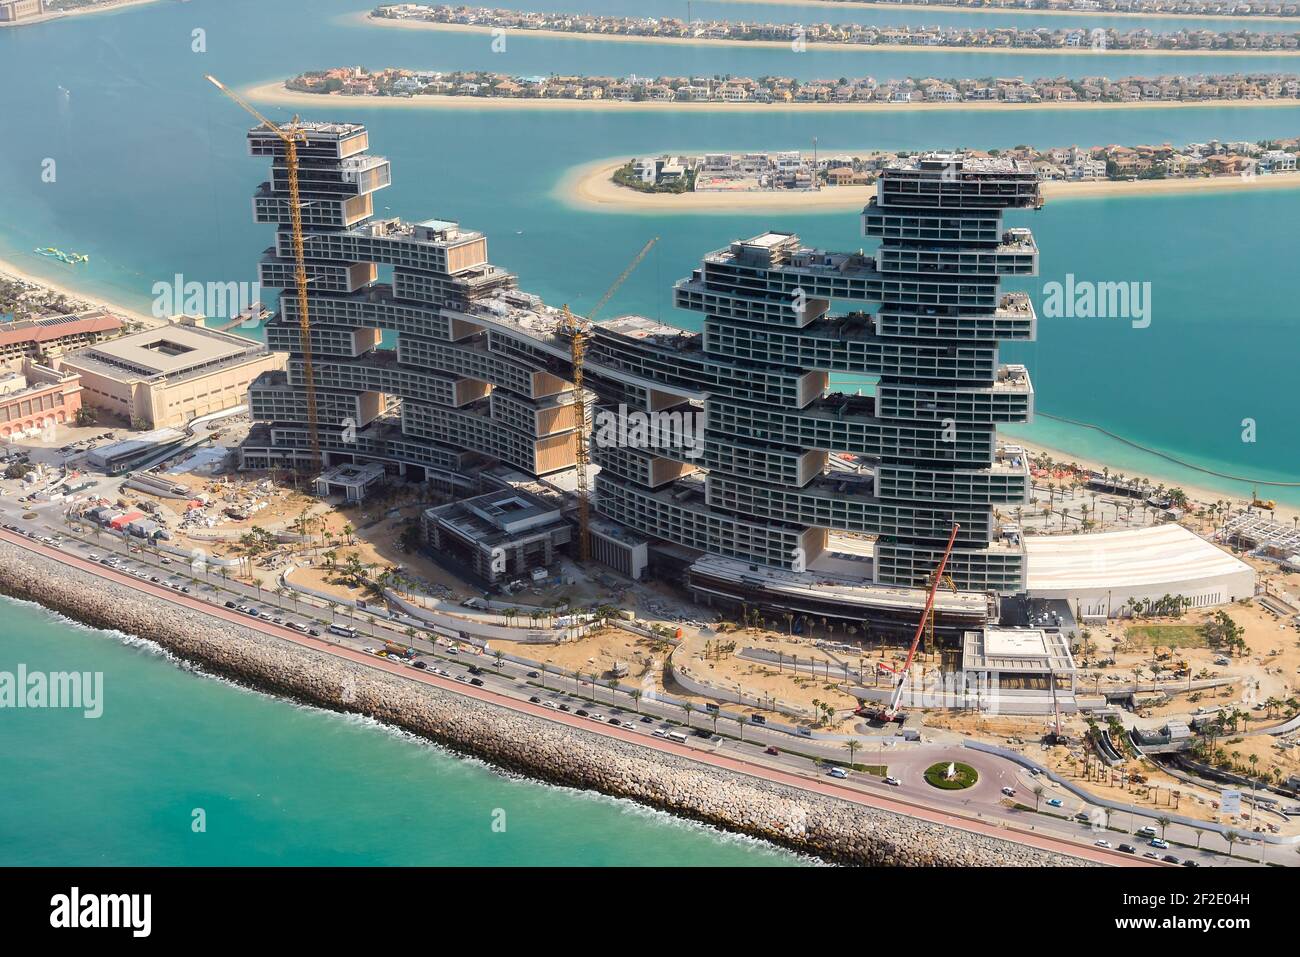 El Royal Atlantis Resort & Residences está en construcción en el Palm, Dubai, Emiratos Árabes Unidos. Desarrollo de obras en Palm Jumeirah. Foto de stock